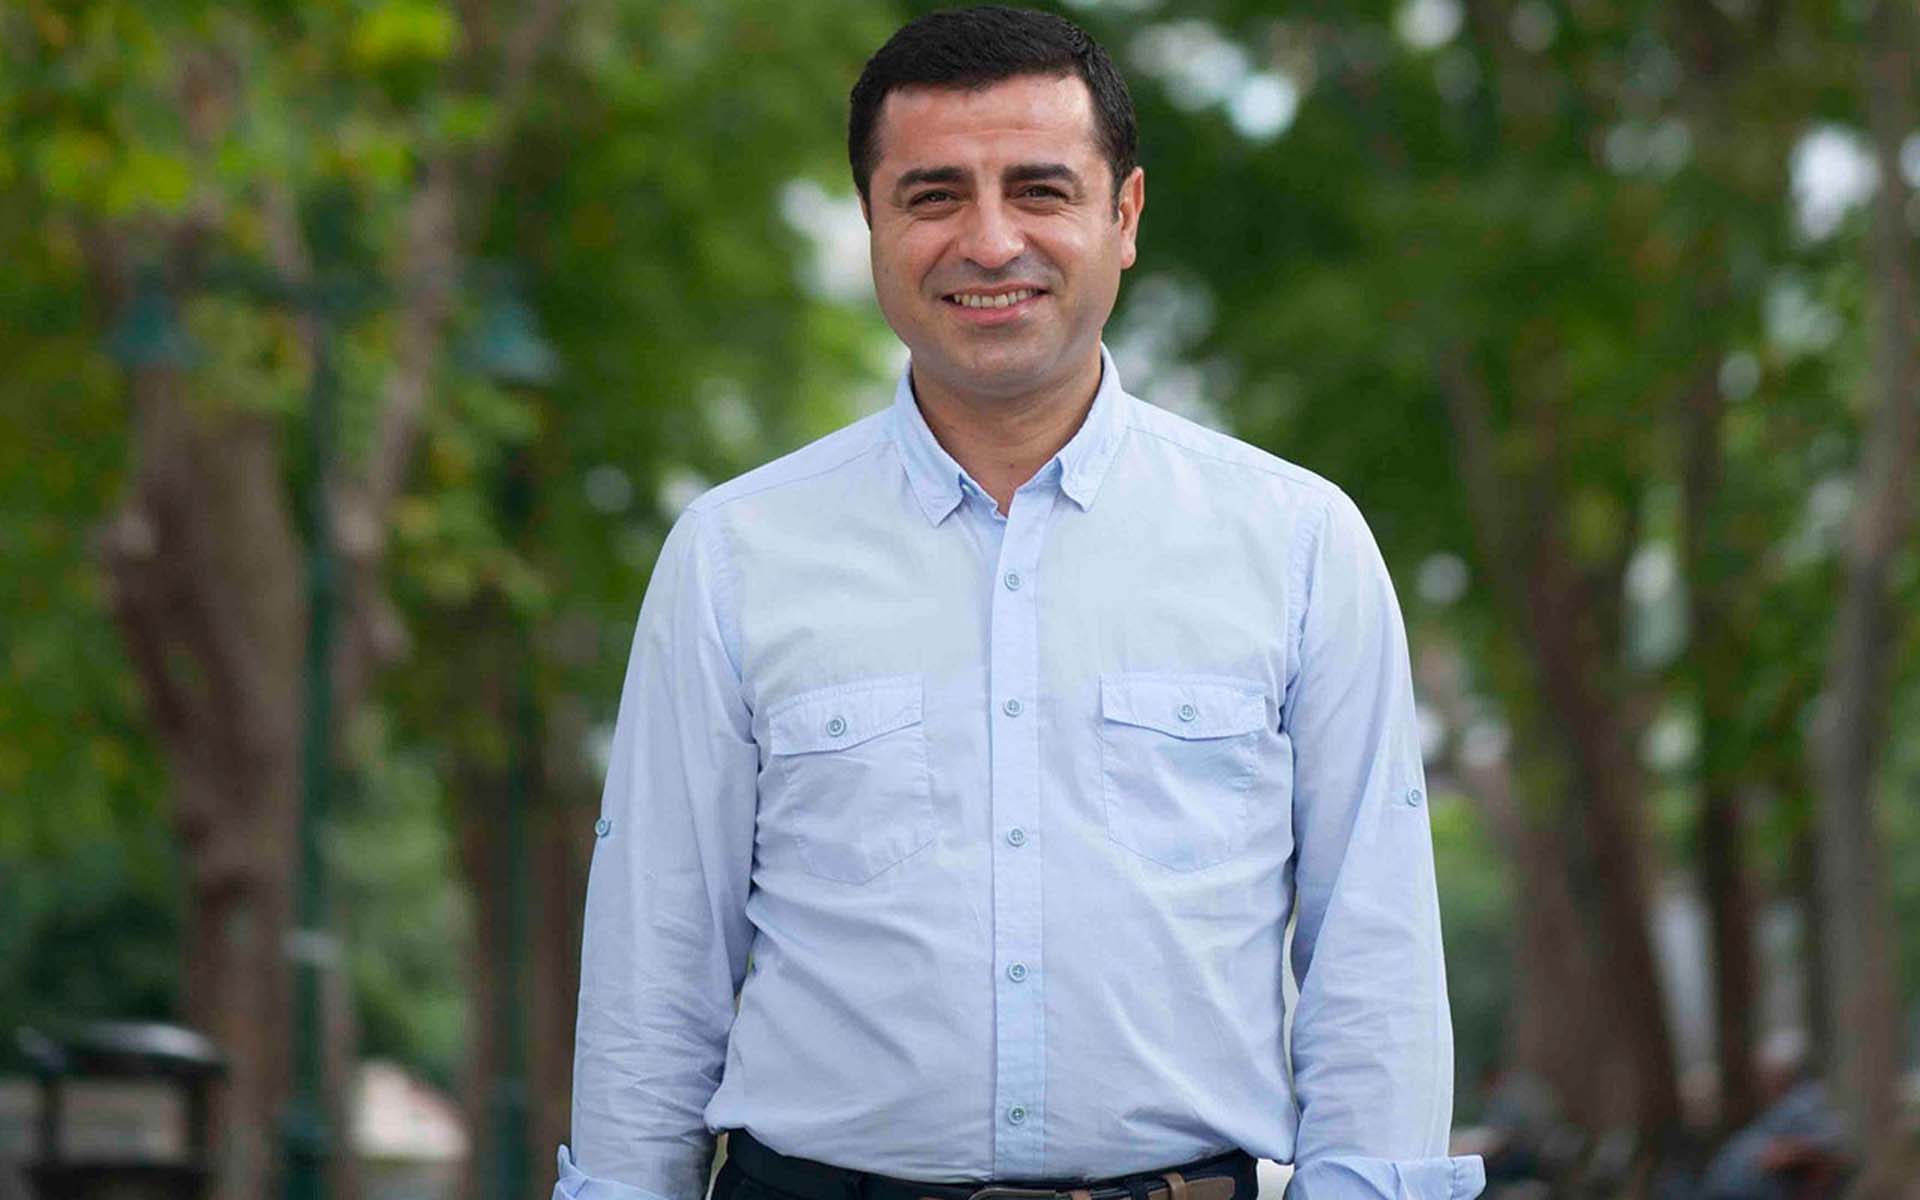 CHP'li Tuncay Özkan'ın Selahattin Demirtaş'a övgüler dizdiği sözlere Ahmet Hakan'dan tam isabet yorum: HDP’nin oylarına talipler ya...